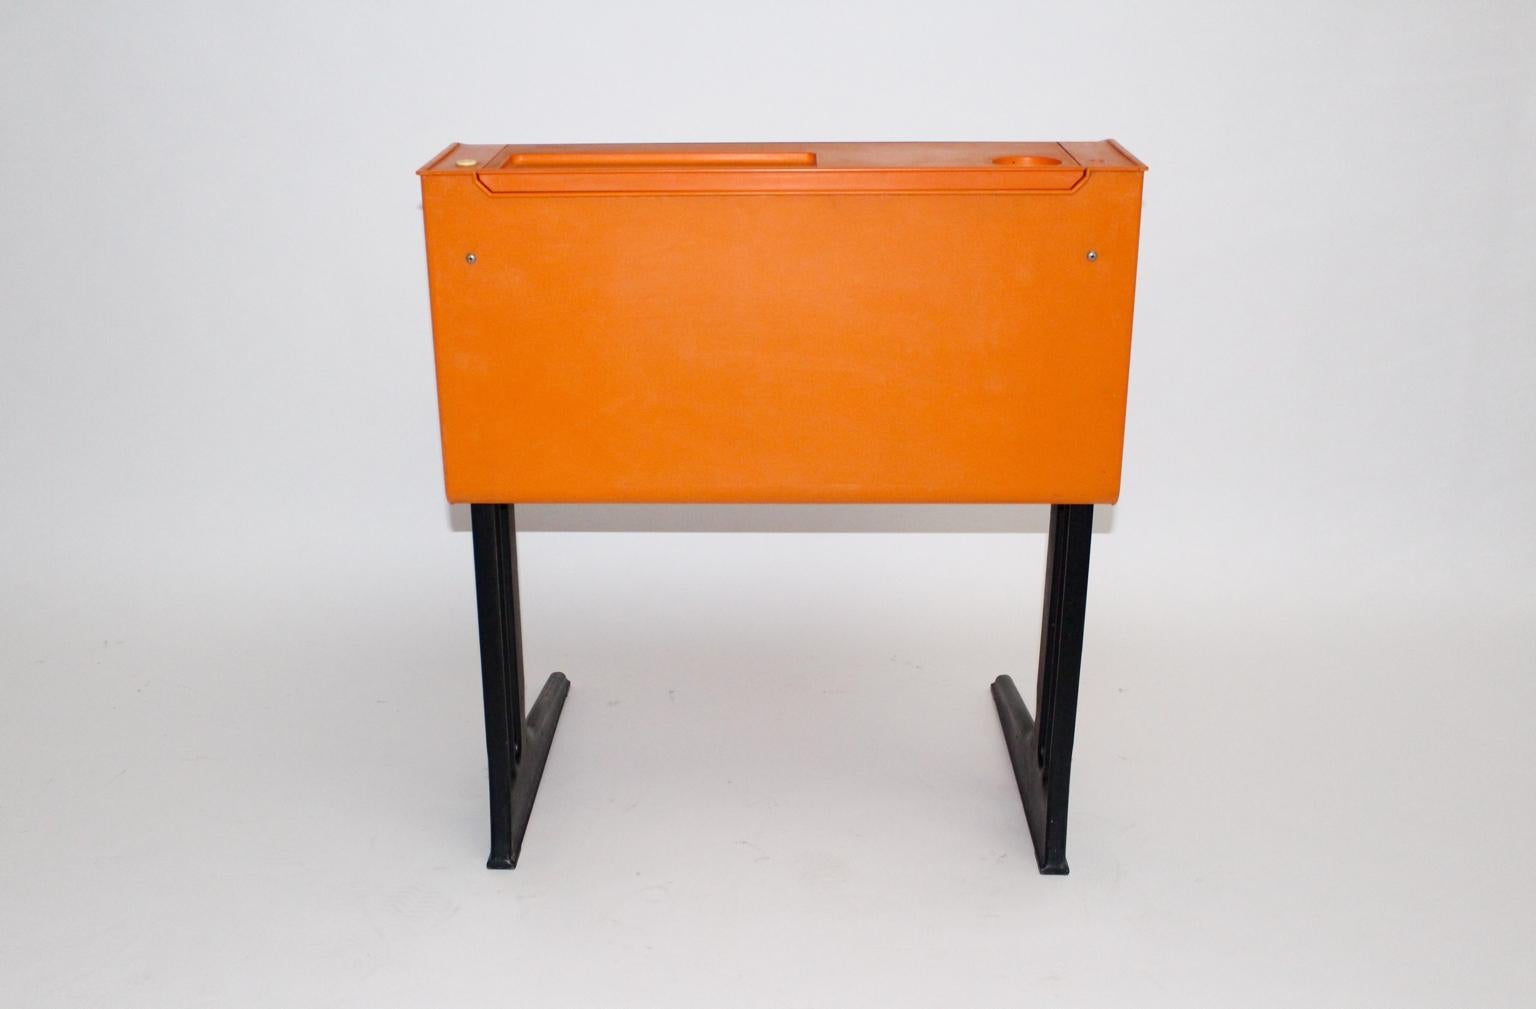 Late 20th Century Space Age Orange Plastic Desk for Children by Luigi Colani Germany circa 1970